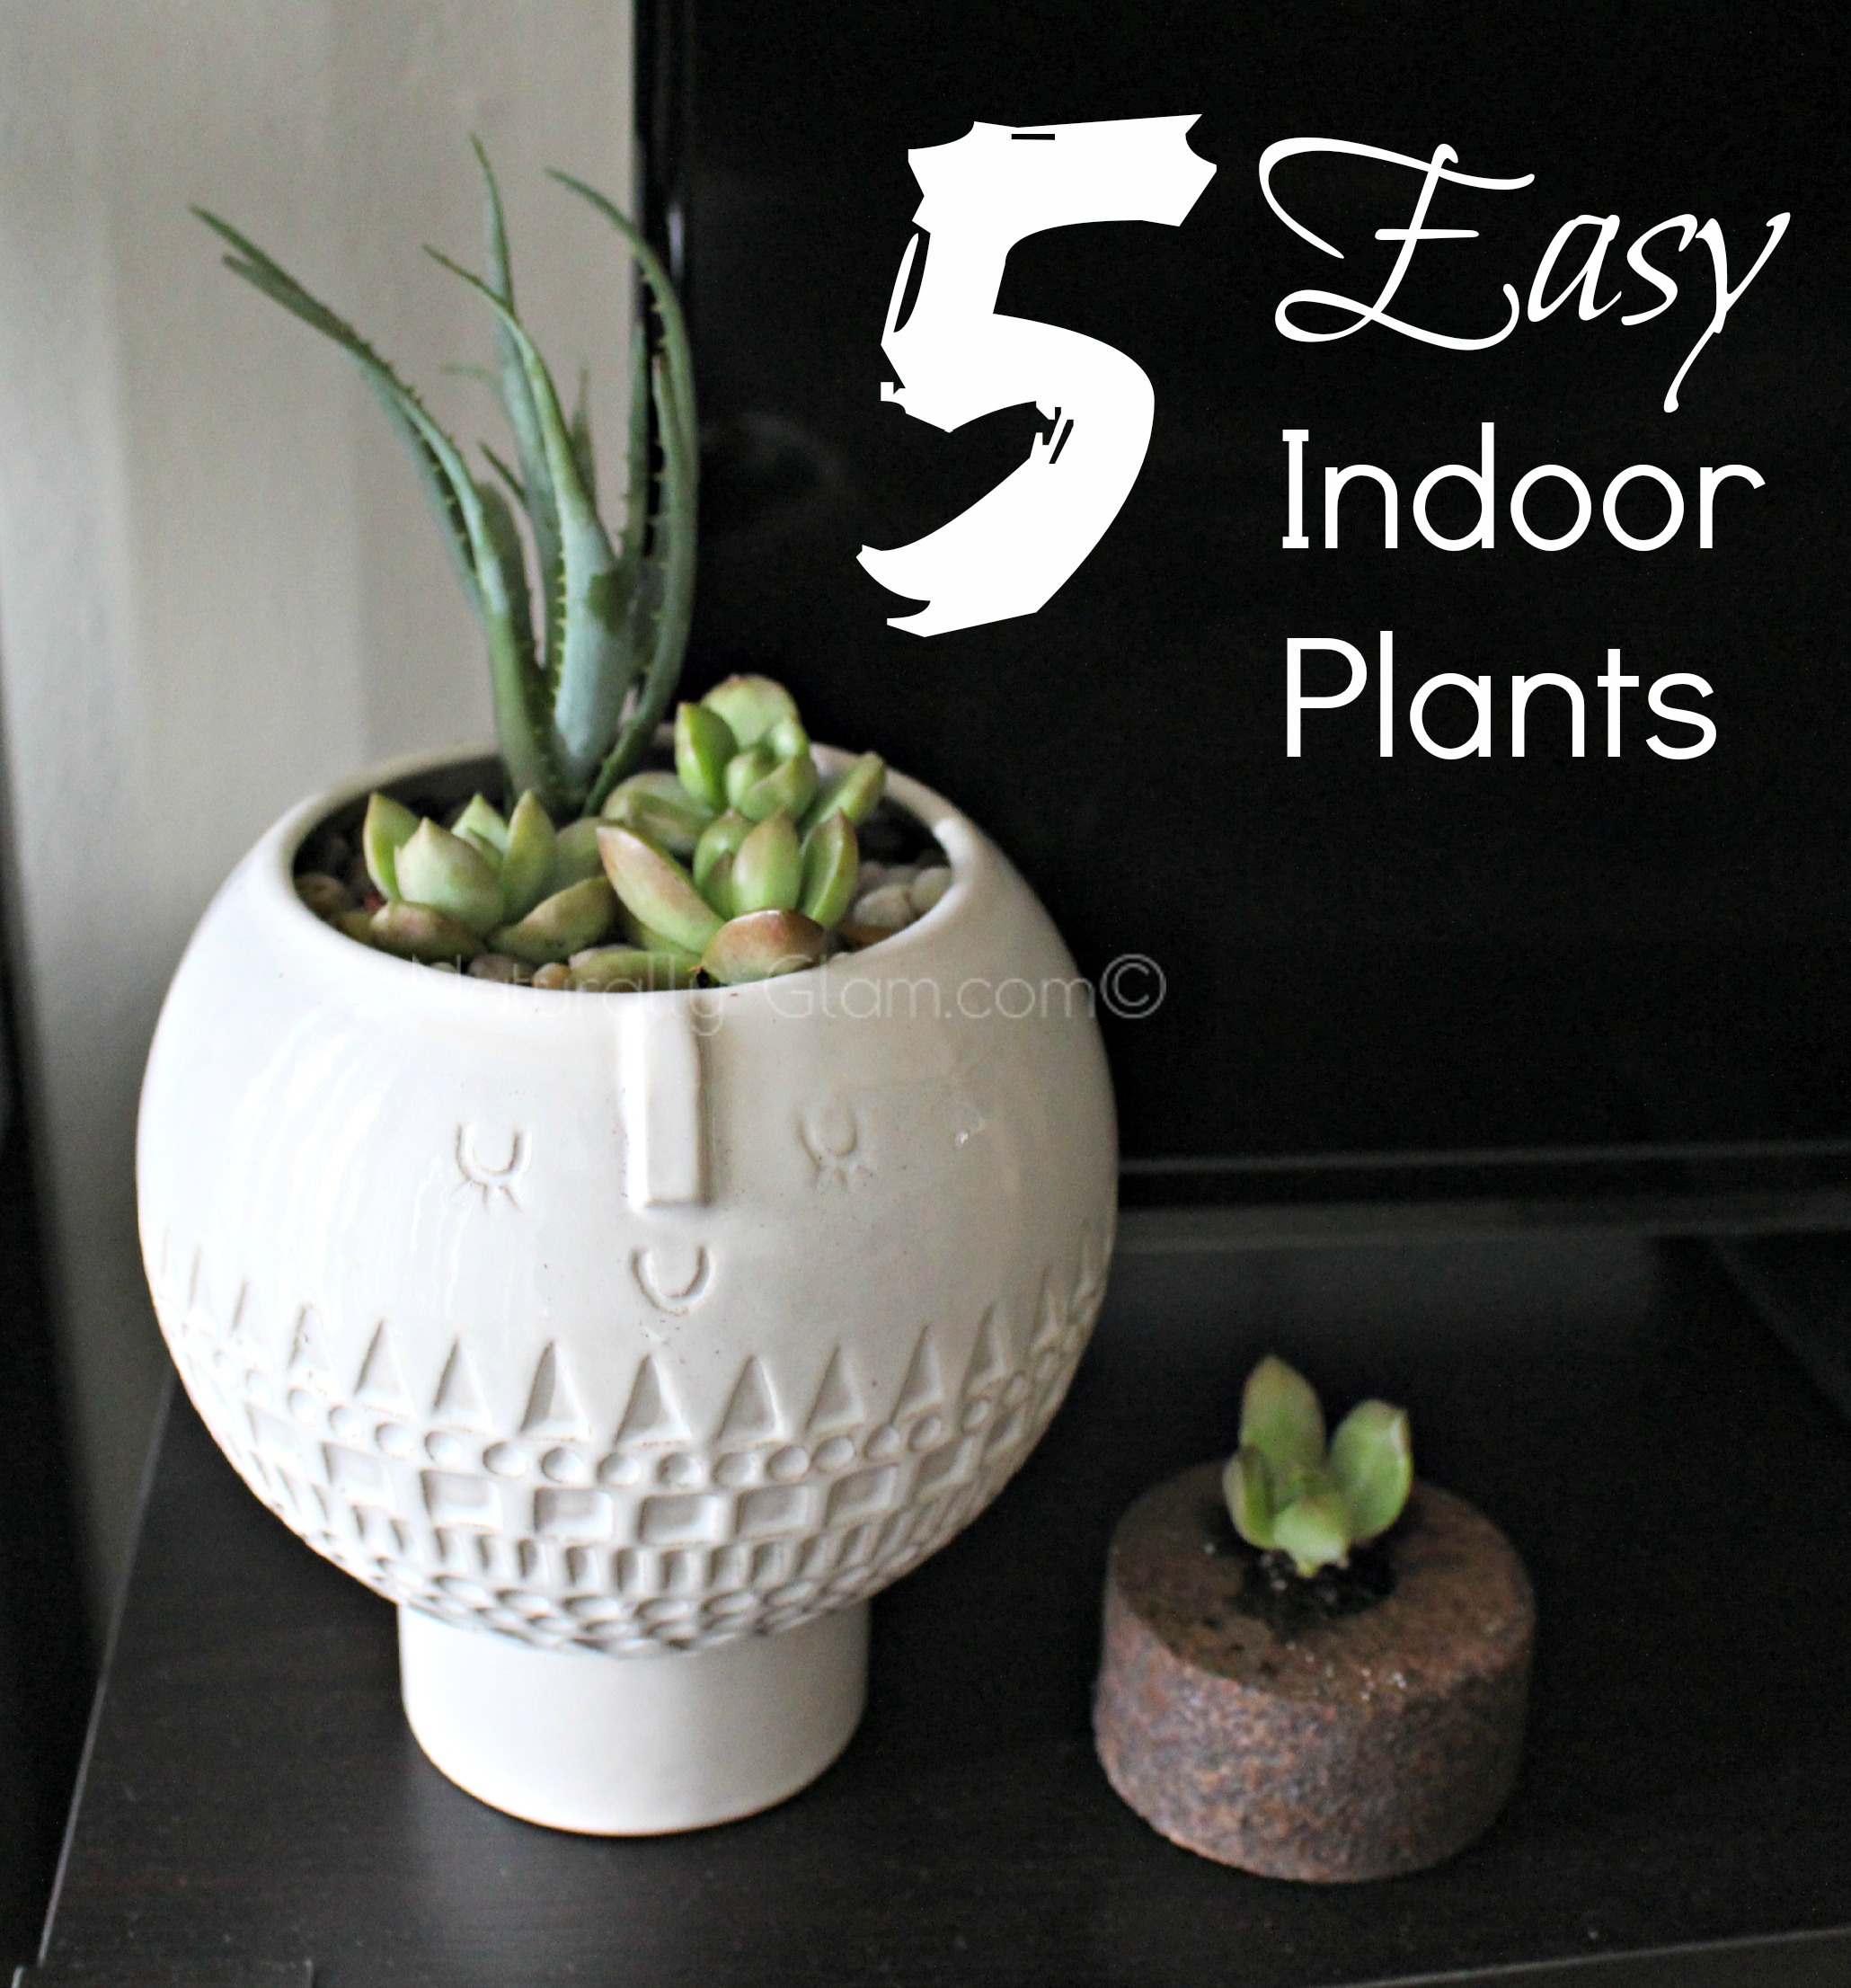 5 Easy Indoor Plants